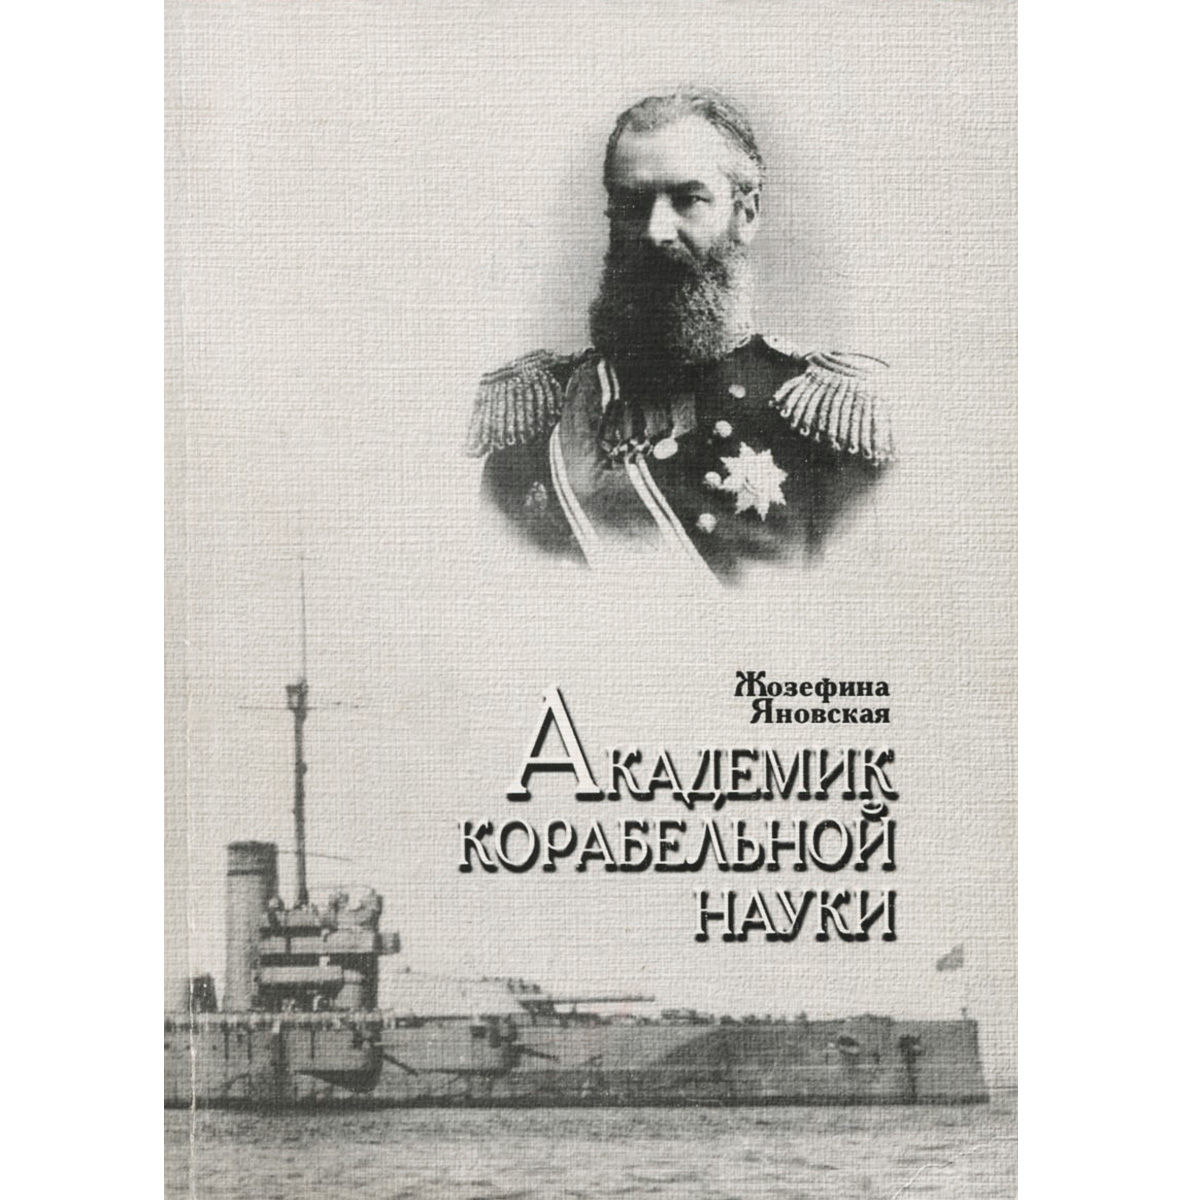 Крылов Алексей Николаевич кораблестроитель